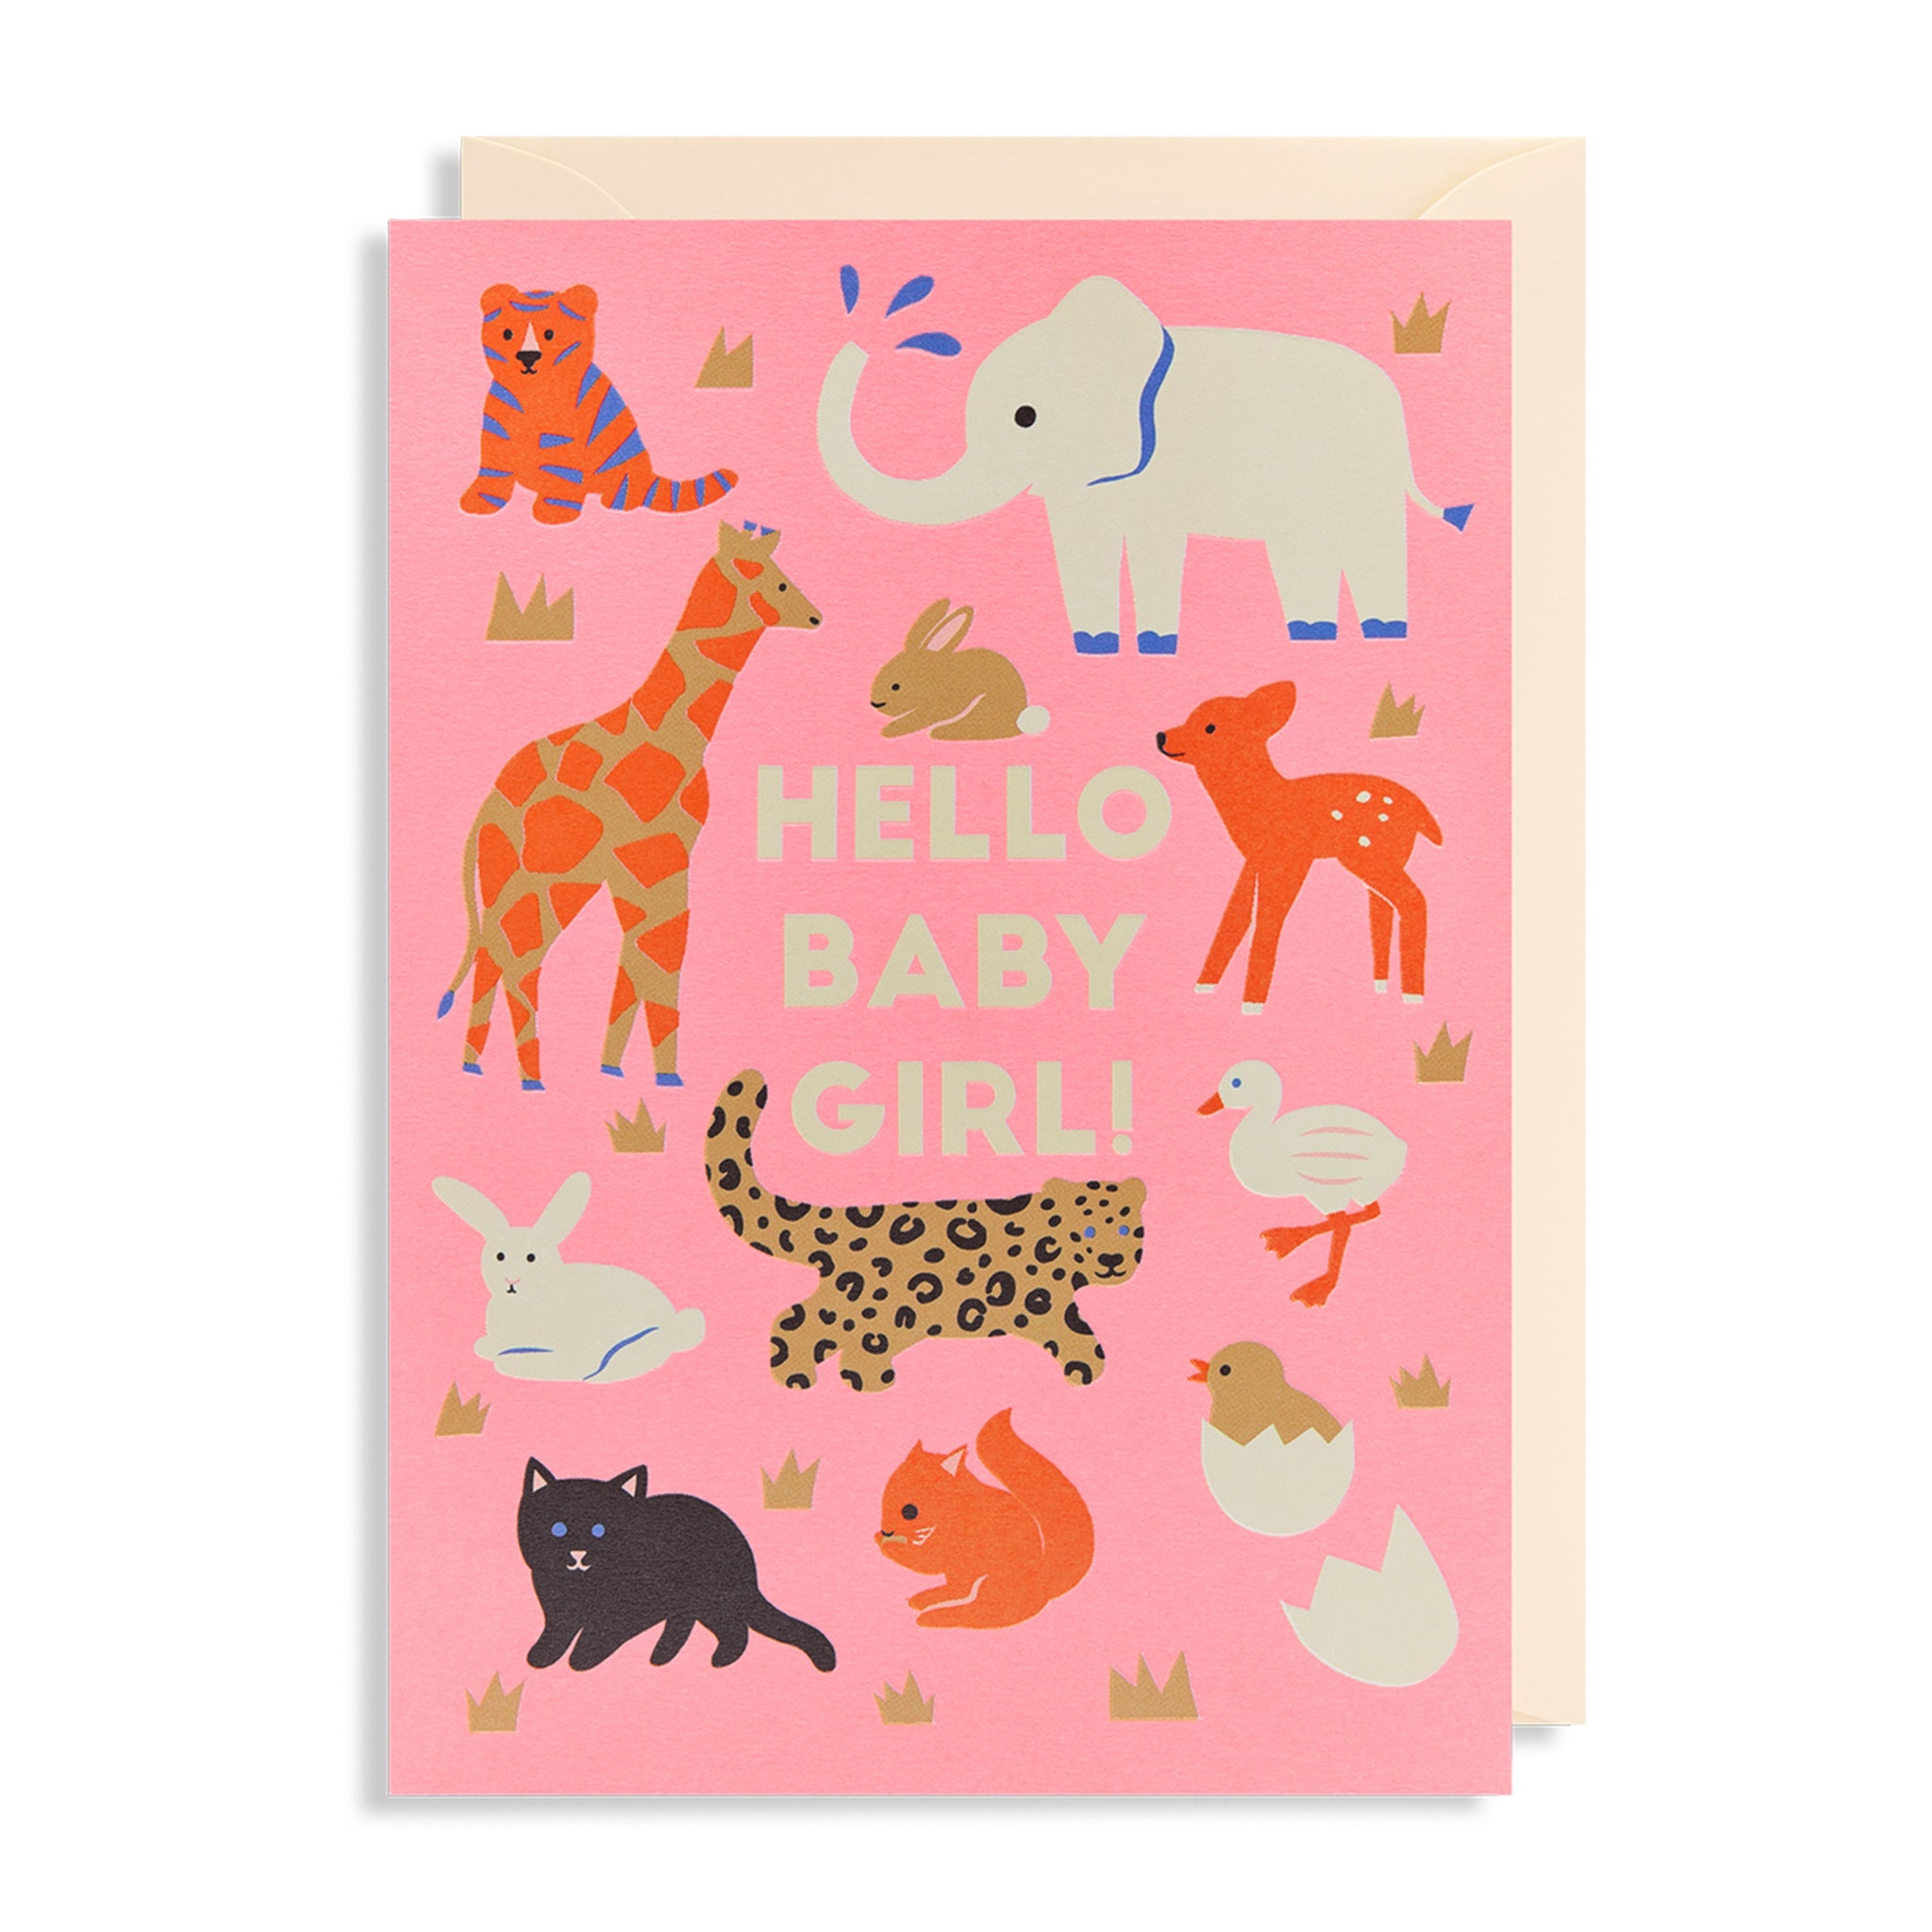 Hello Baby Girl! - Card